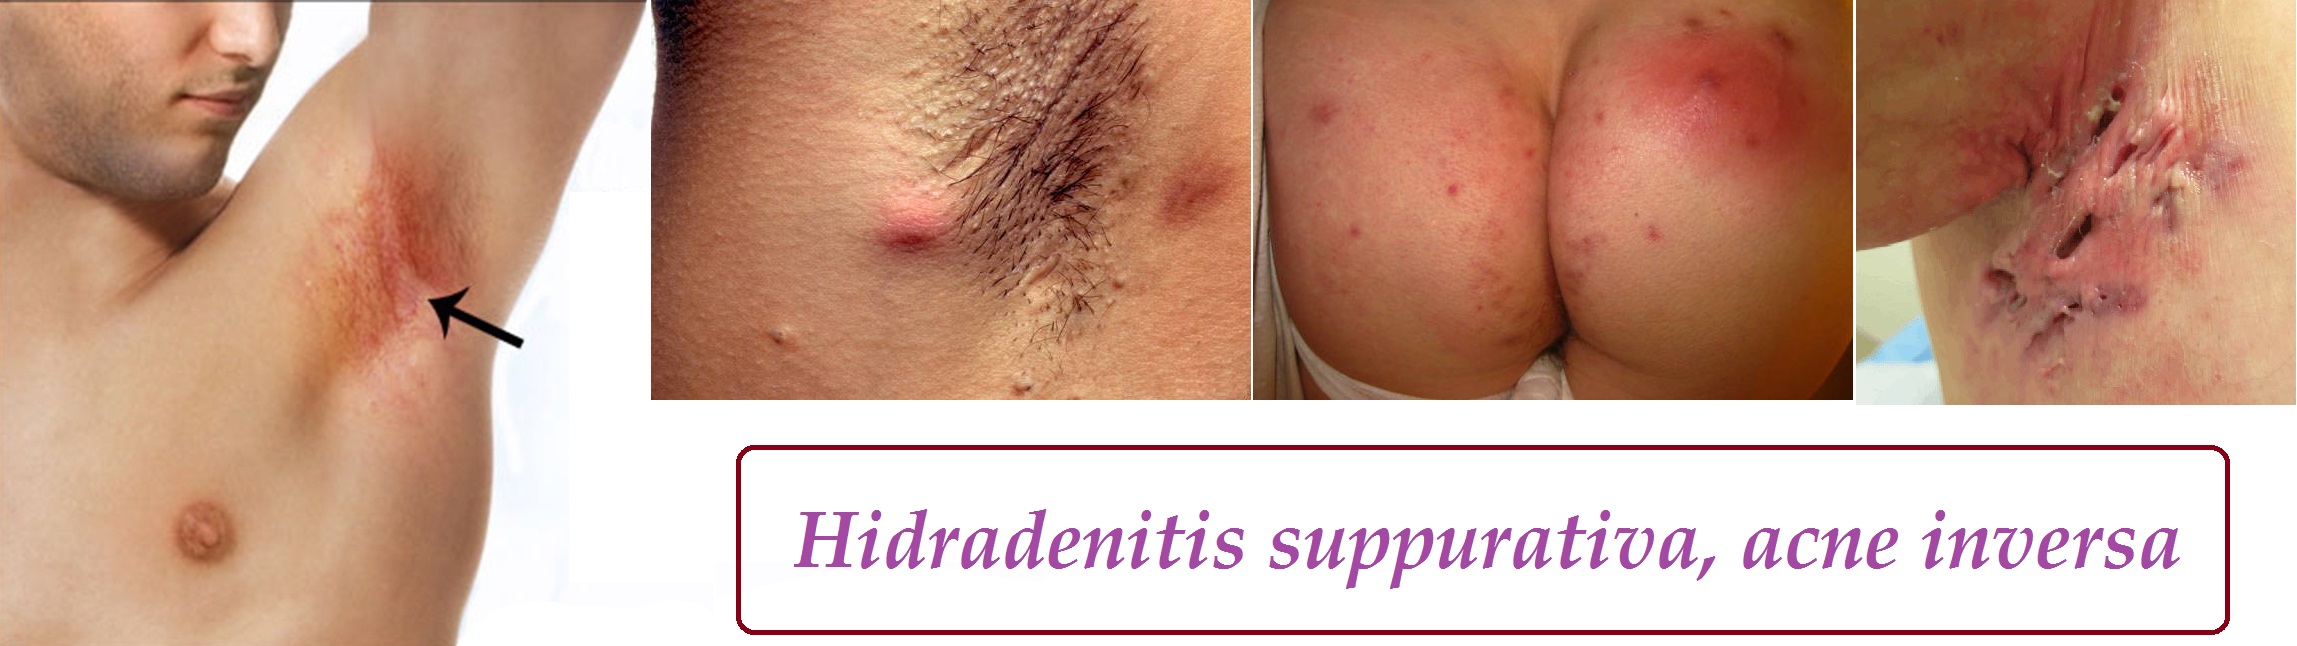 hidradenitis suppurativa acne inversa priznaky projevy symptomy pricina lecba fotografie obrazek